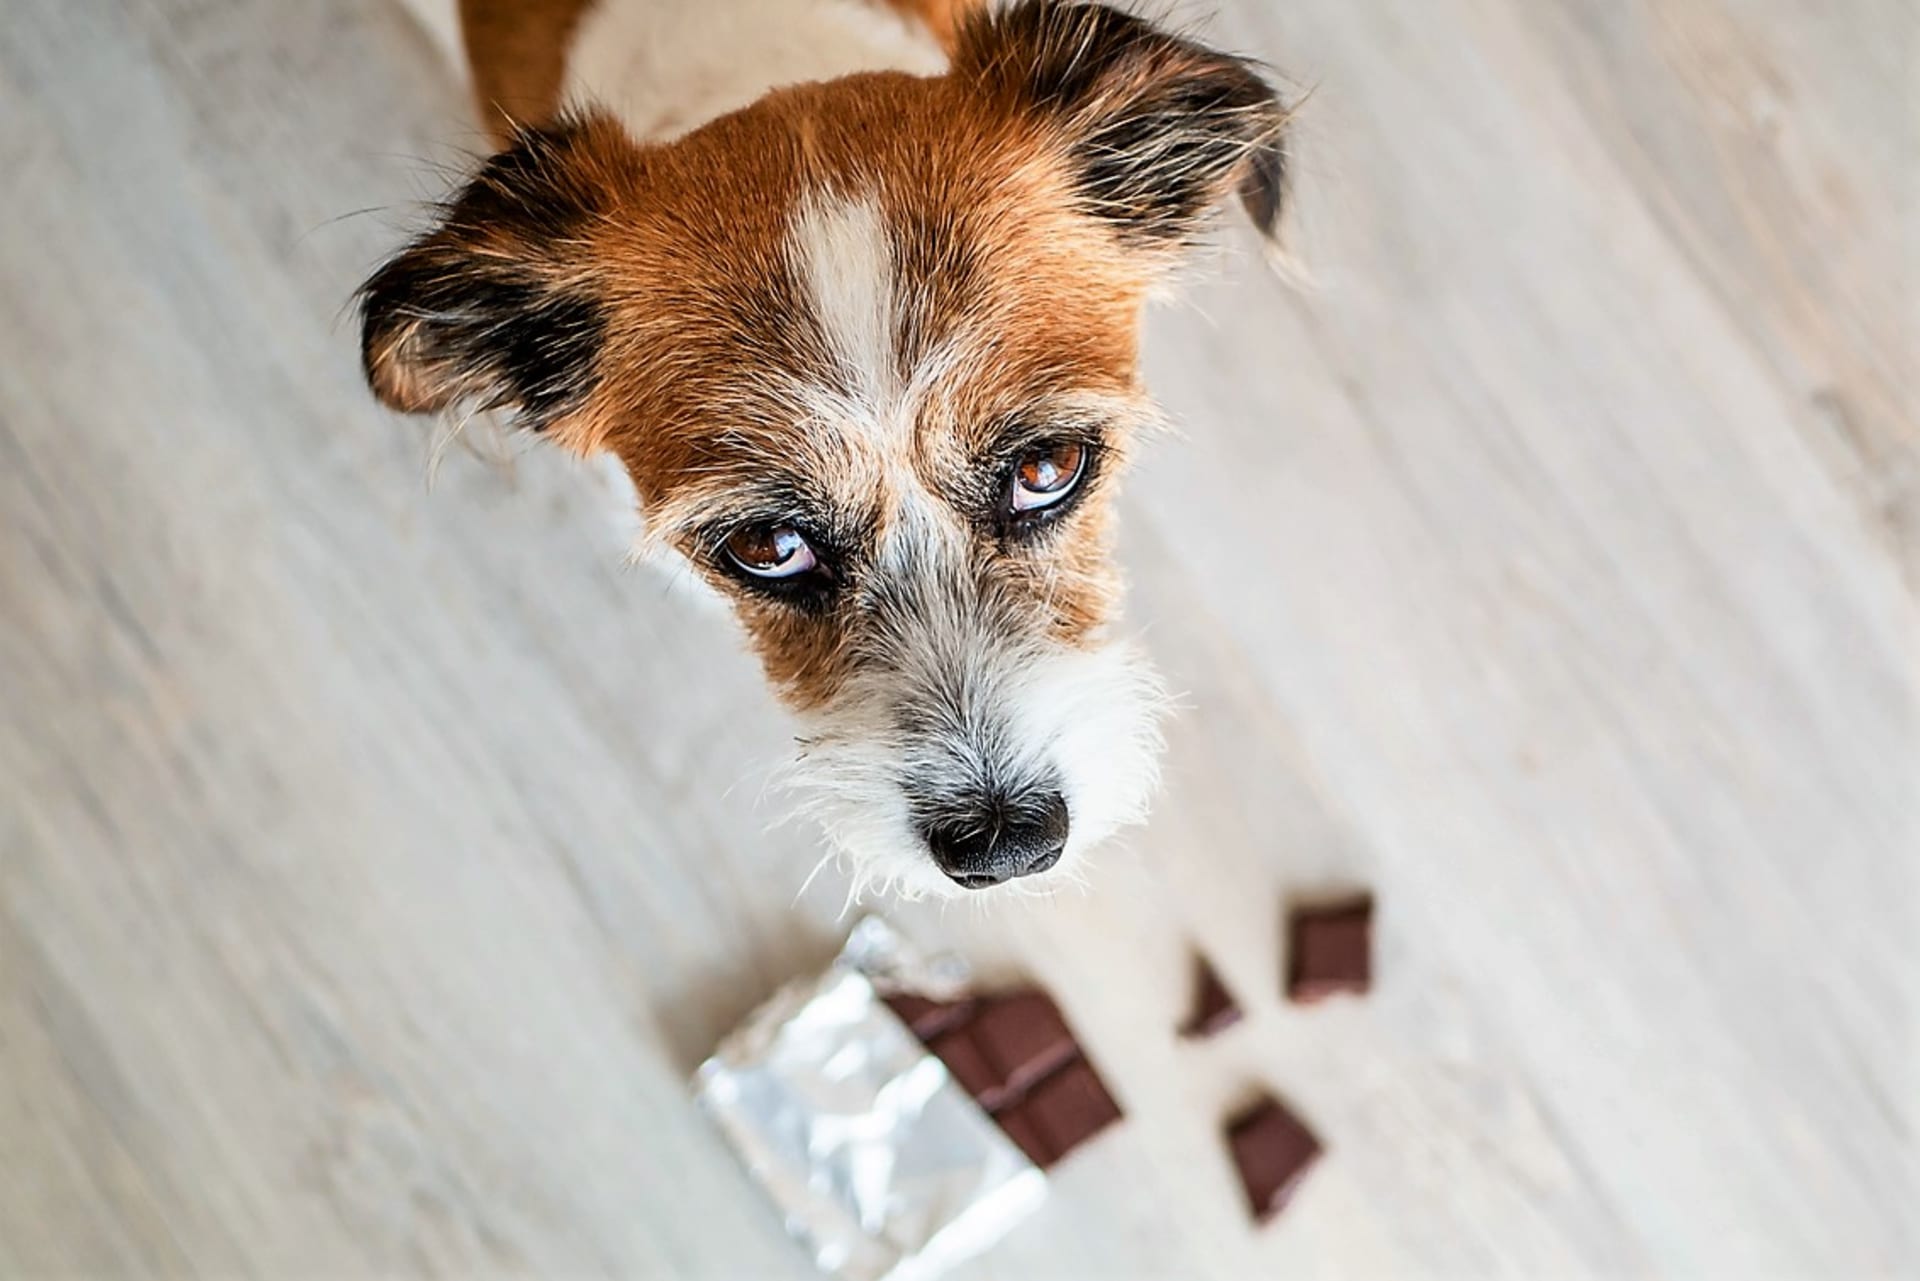 Čokoláda je zvláště  pro psy nejrizikovější pochutinou  je pro ně dokonce přímo jedovatá